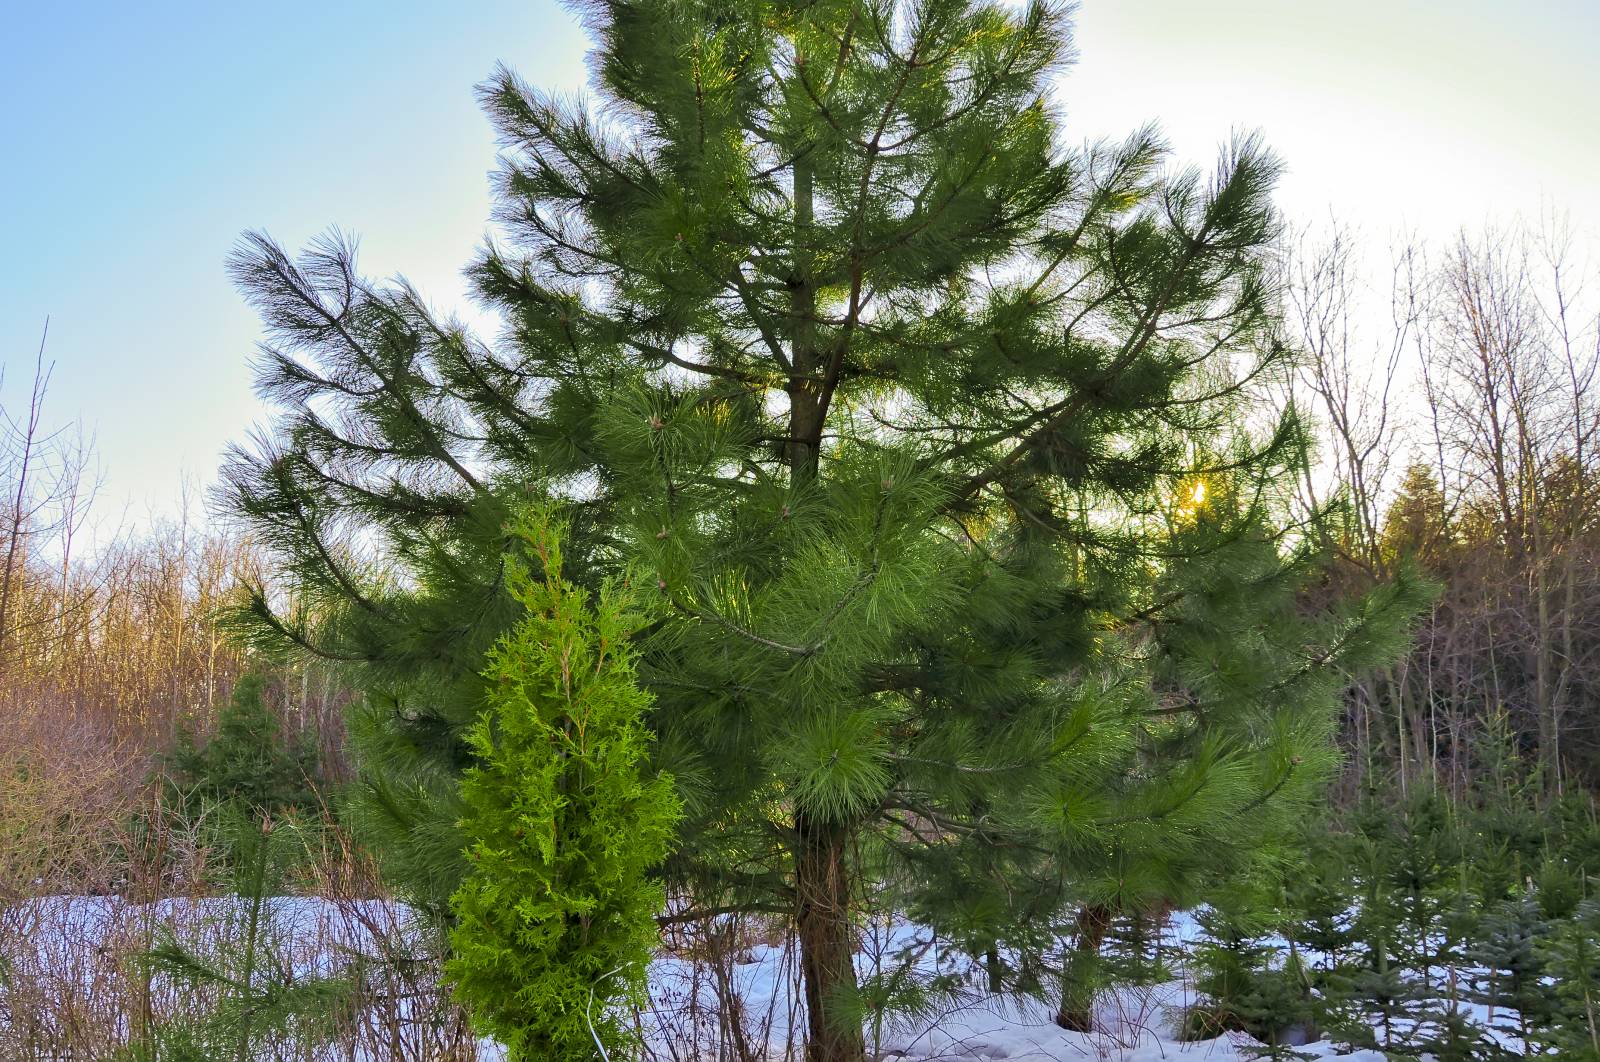 Хвойная видео. Сосны Pinus lambertiana. Сосна Ламберта сахарная. Сосна Ламберта (Pinus lambertiana). Шишка сосны Pinus lambertiana.